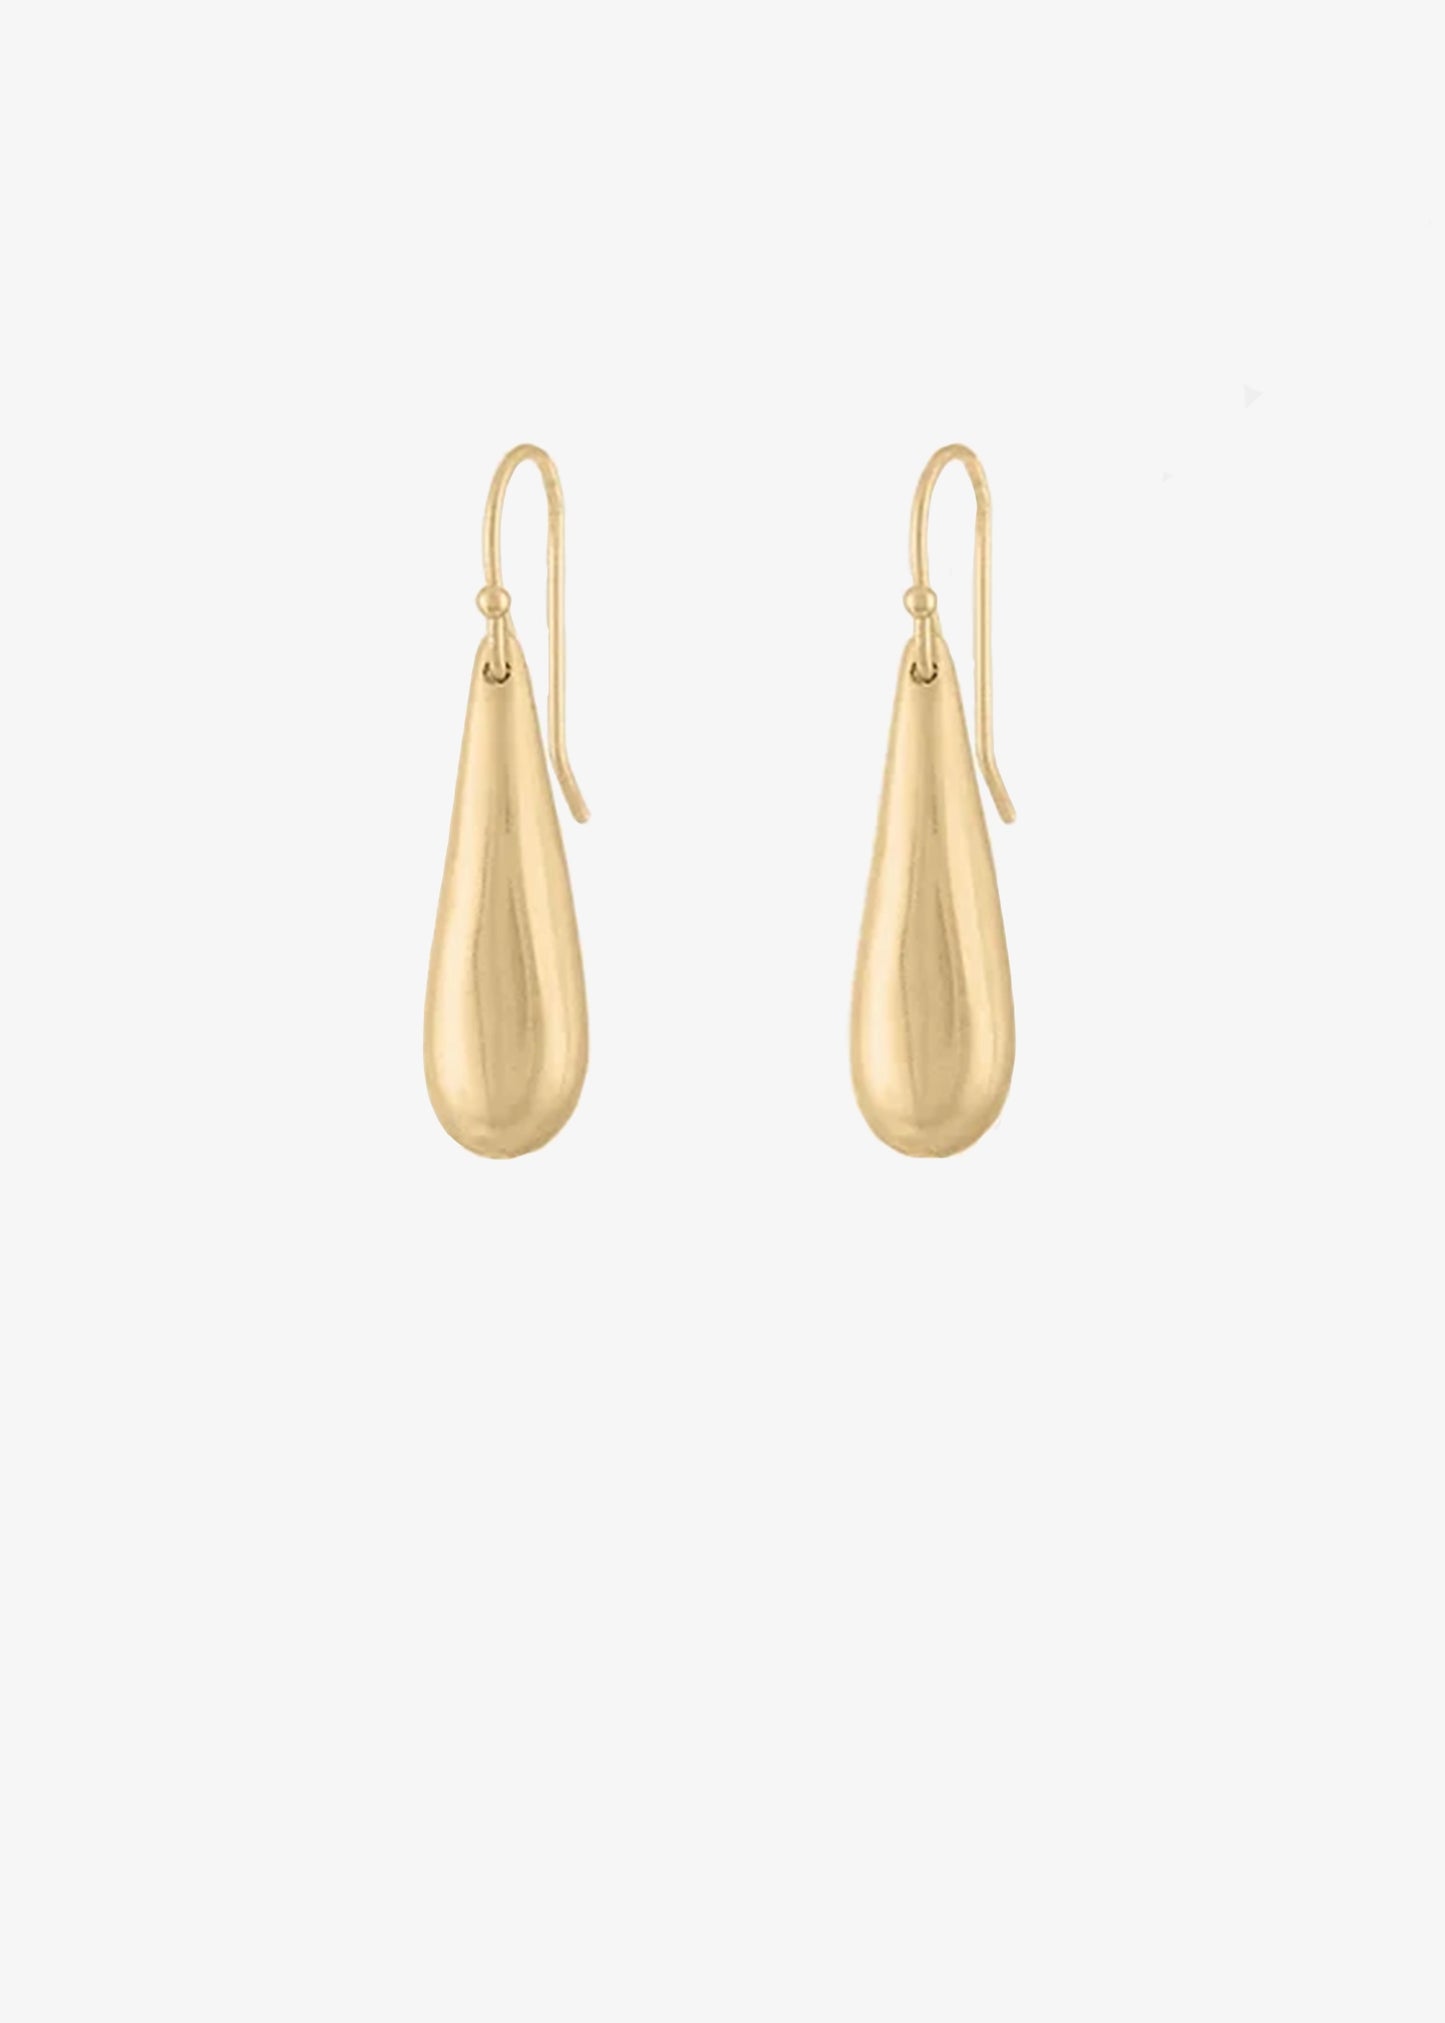 Asia-Ingalls-Single-tear-drop-earrings